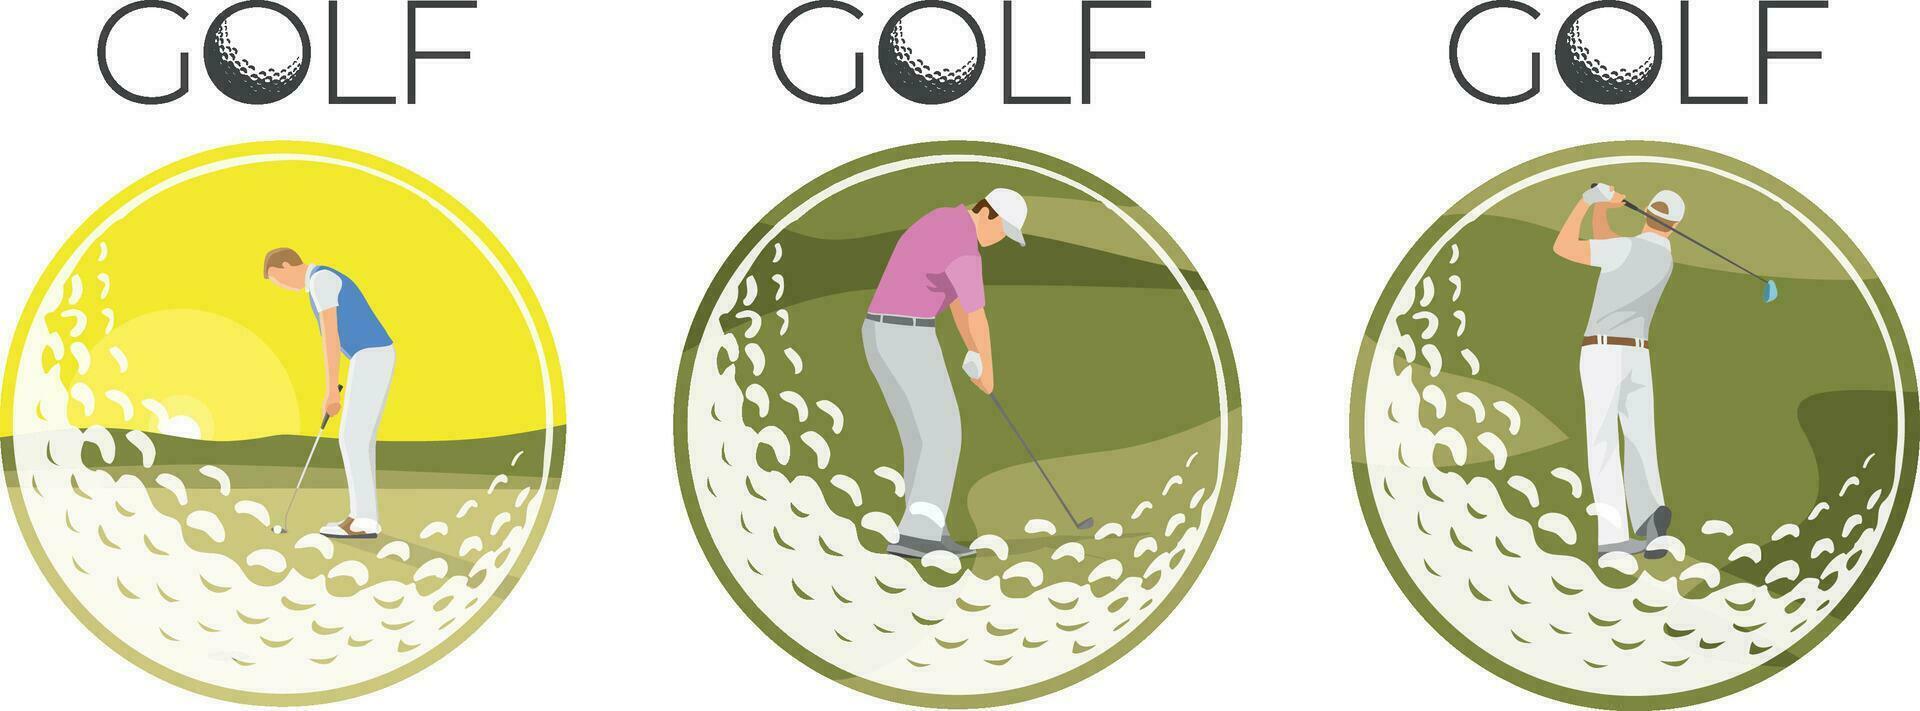 golfspelare verkan i golf boll ram. vektor illustration.